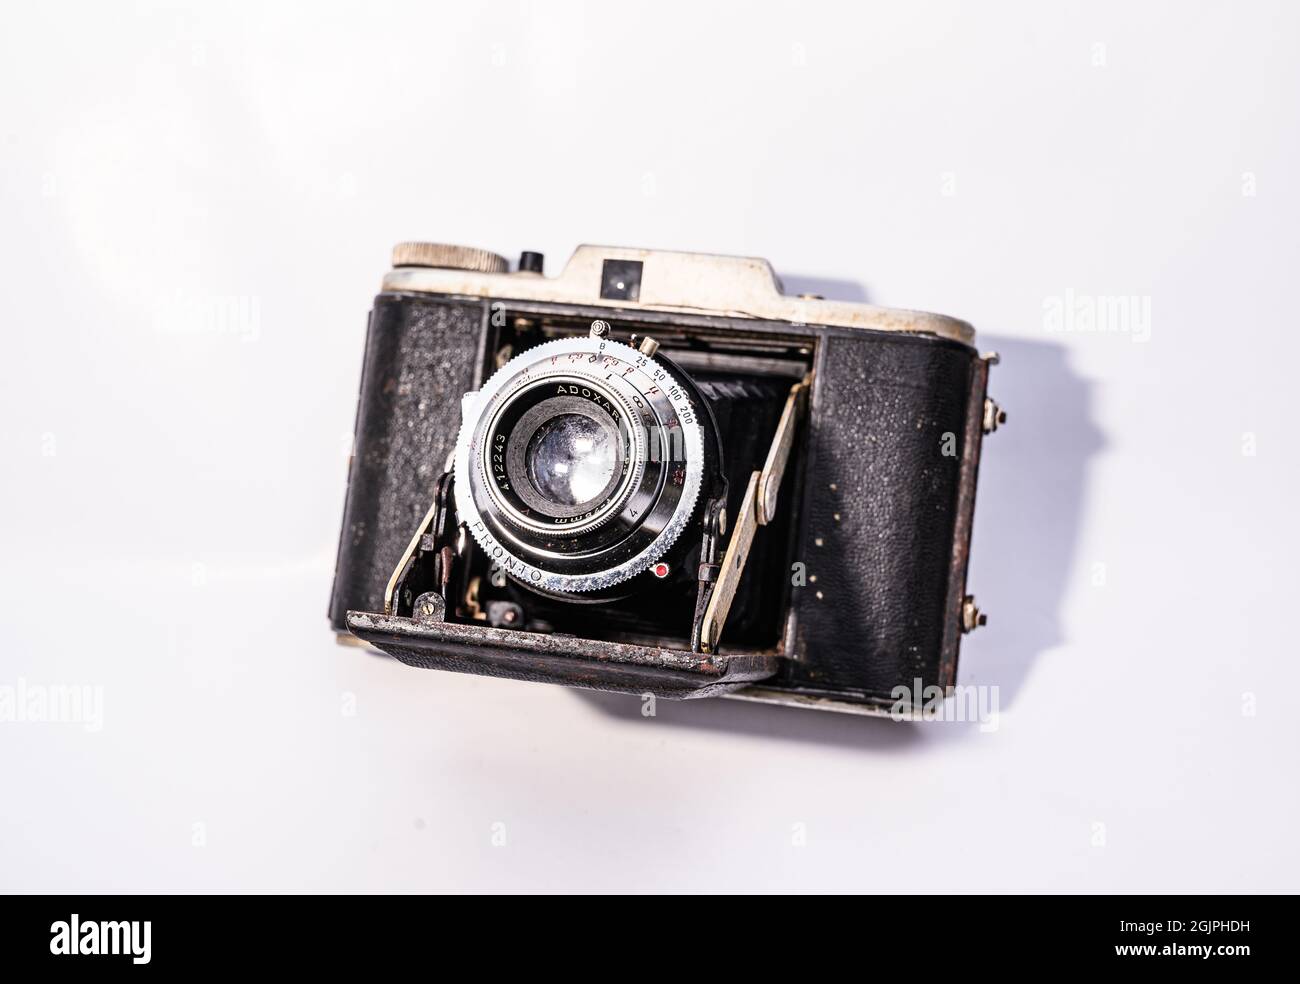 ADOX Golf 63 ist eine Faltschichtkamera der Firma Adox Fotowerke, Wiesbaden, hergestellt zwischen 1954 und 1959. Das Unternehmen Adox wurde 1860 gegründet und war die „erste photochemische Fabrik der Welt“. Verwendet 120 Rollfilm 120 und die Bildgröße ist 6x6 cmEs hat ein beschichtetes Adoxar 1:6.3 f=75 mm Objektiv mit einem Drehtisch-Objektiv vorne für die Fokussierung. Diese verlassene Vintage-Kamera wurde in einem Haus aus dem Müll in Tehatta, Westbengalen, Indien, gefunden. Stockfoto